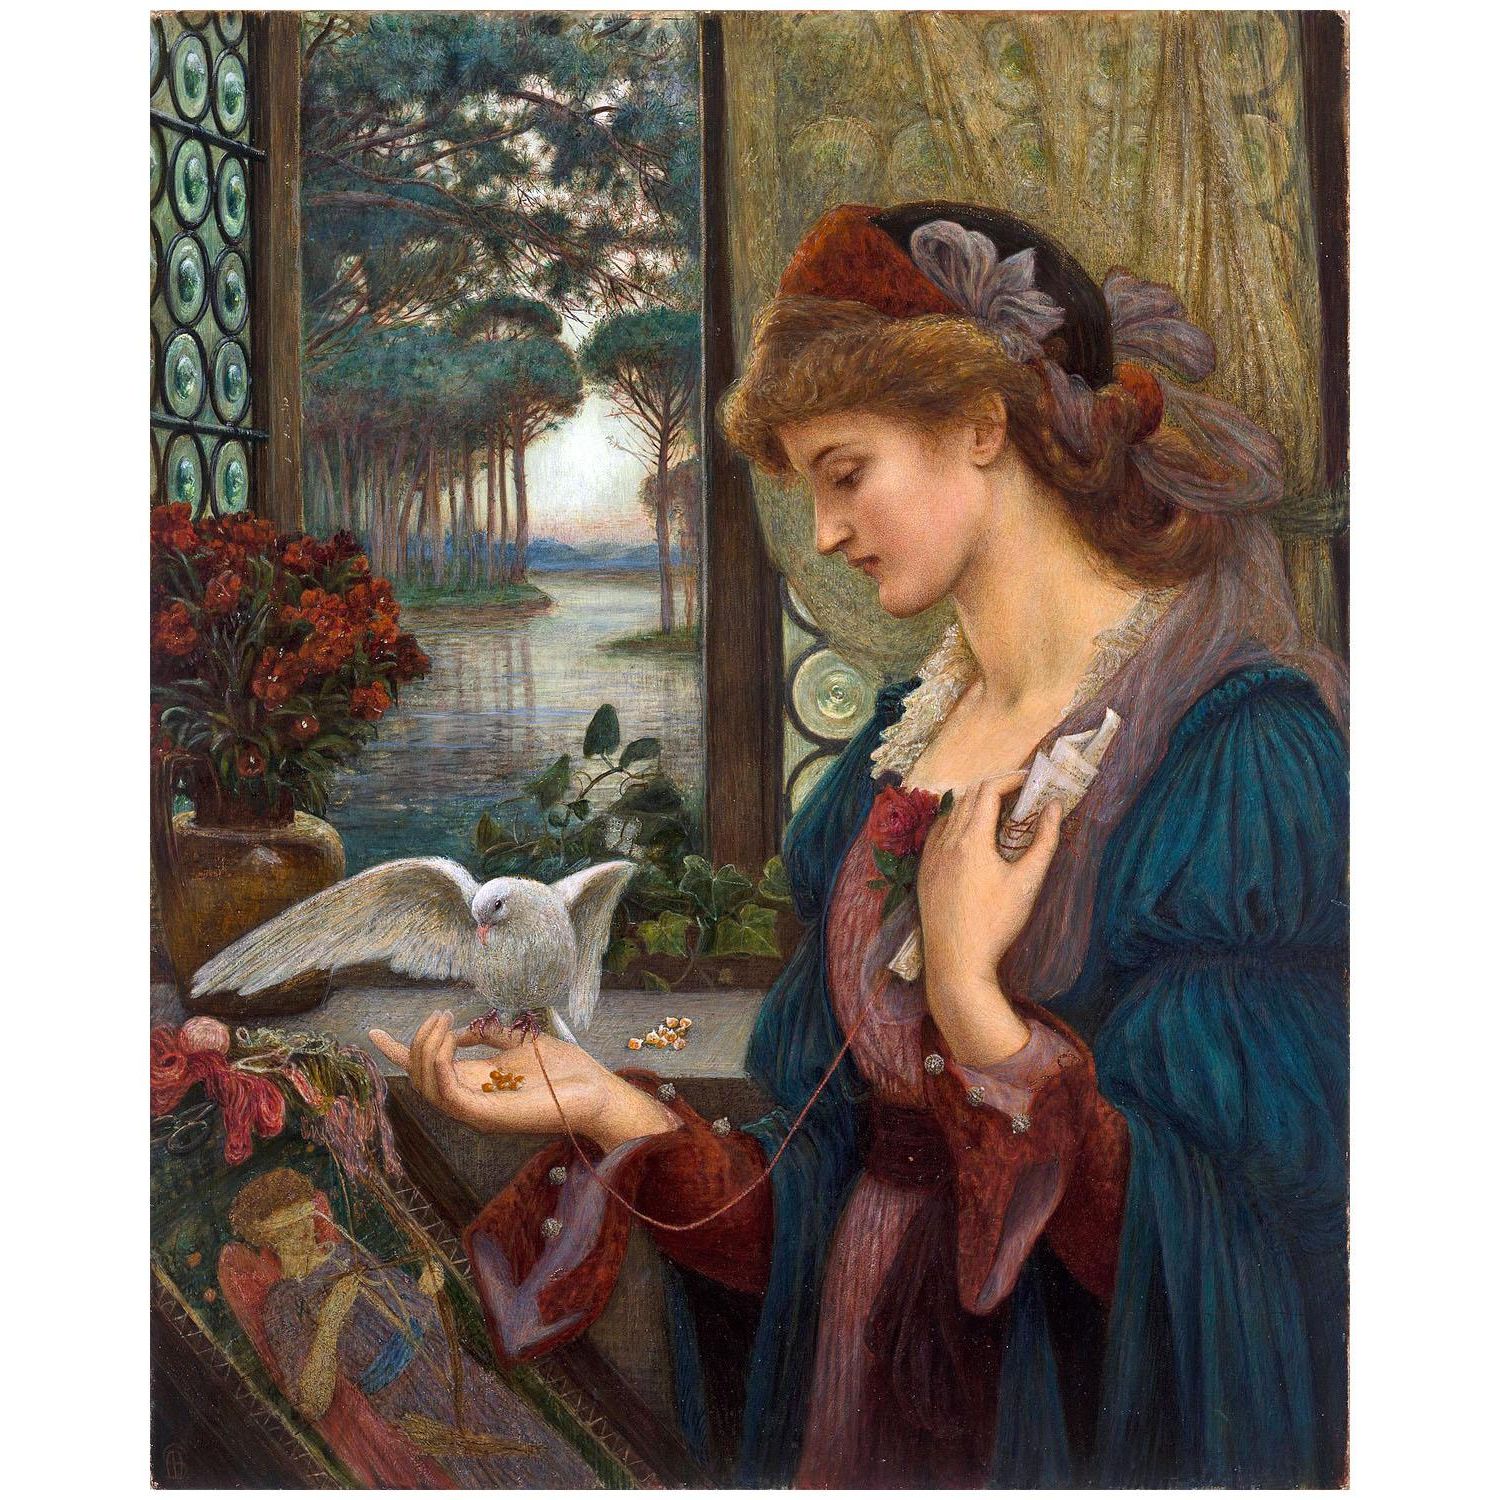 Marie Spartali. Love’s Messenger. 1885. Delaware Art Museum